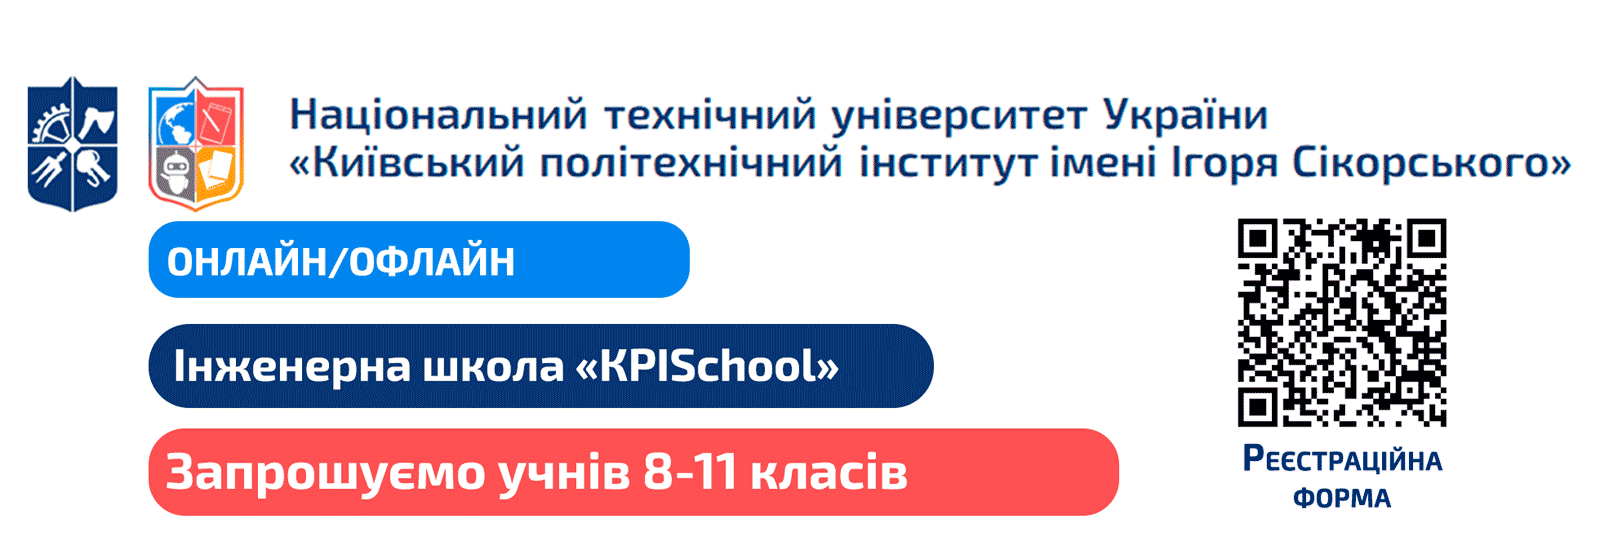 Инженерная школа KPISchool